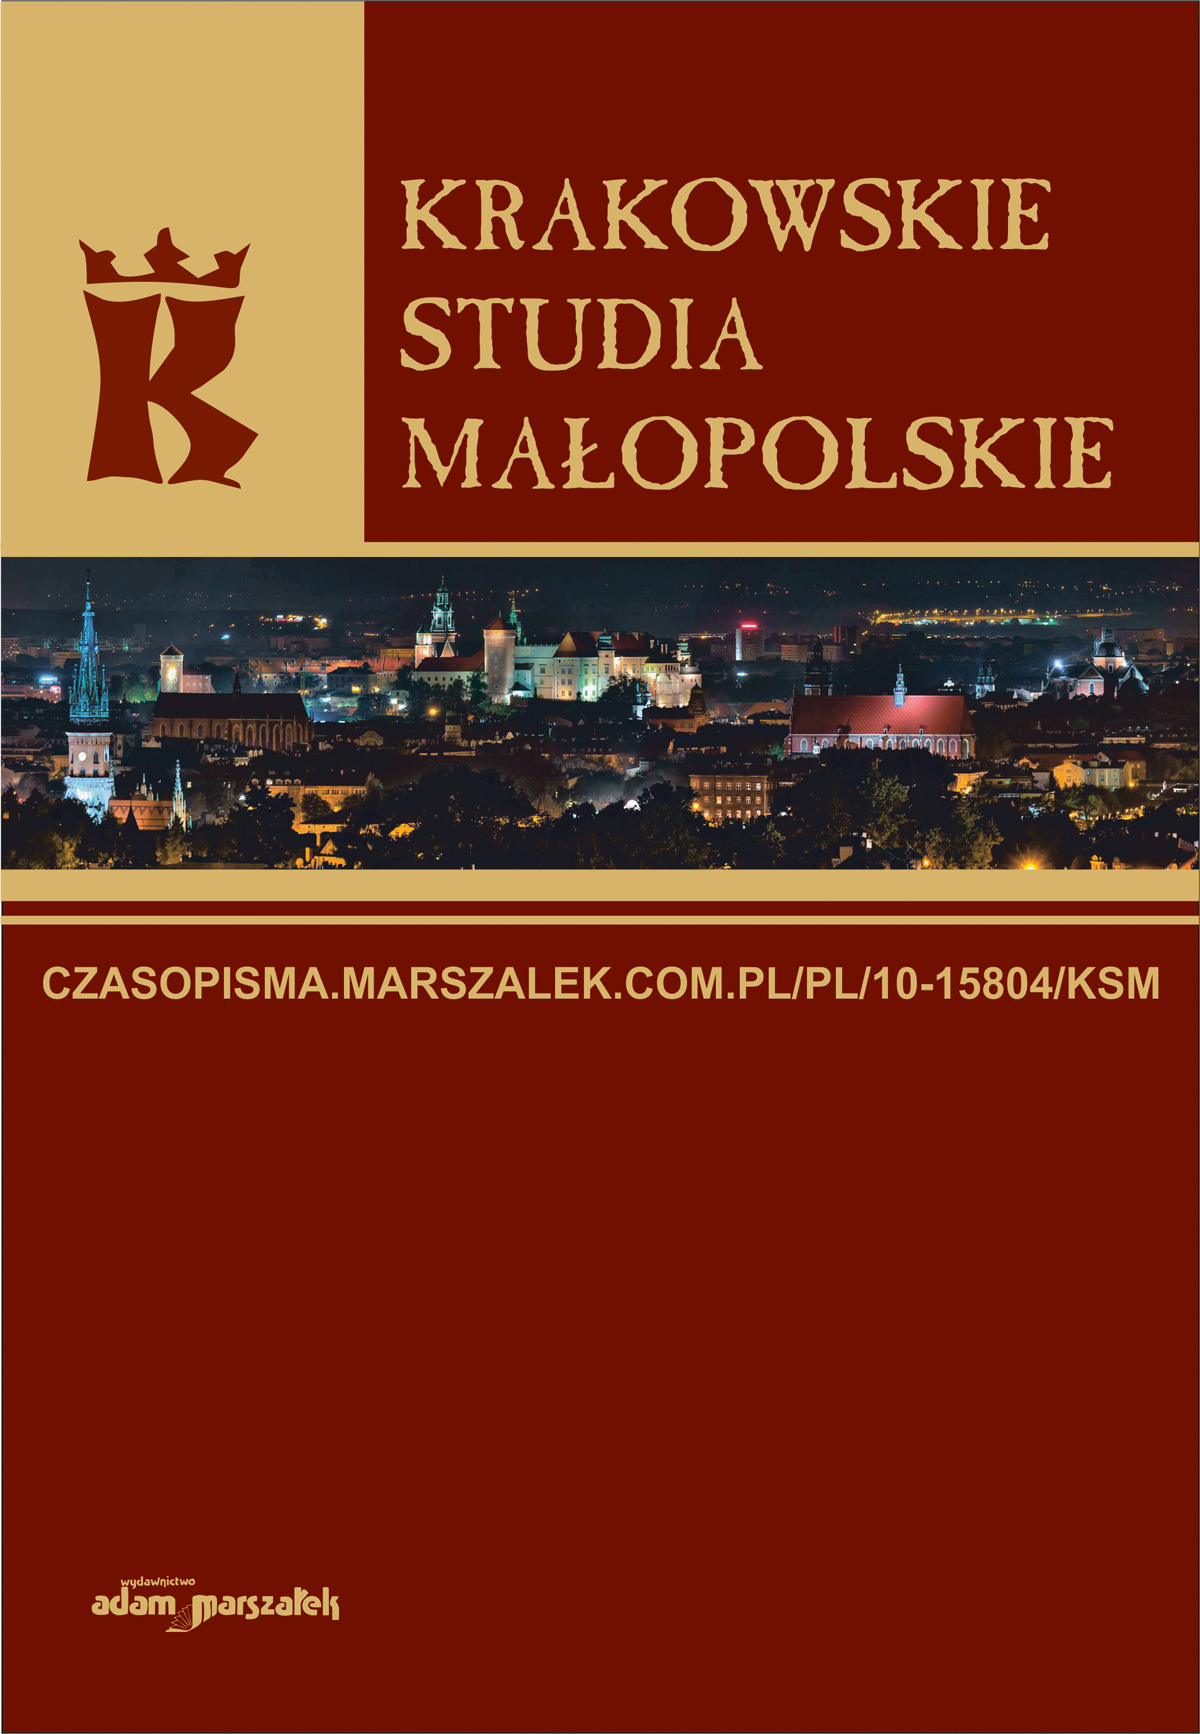 Janusz Mariański, Godność ludzka i wychowanie progodnościowe (refleksje socjologa), Wydawnictwo Adam Marszałek, Toruń 2022 Cover Image